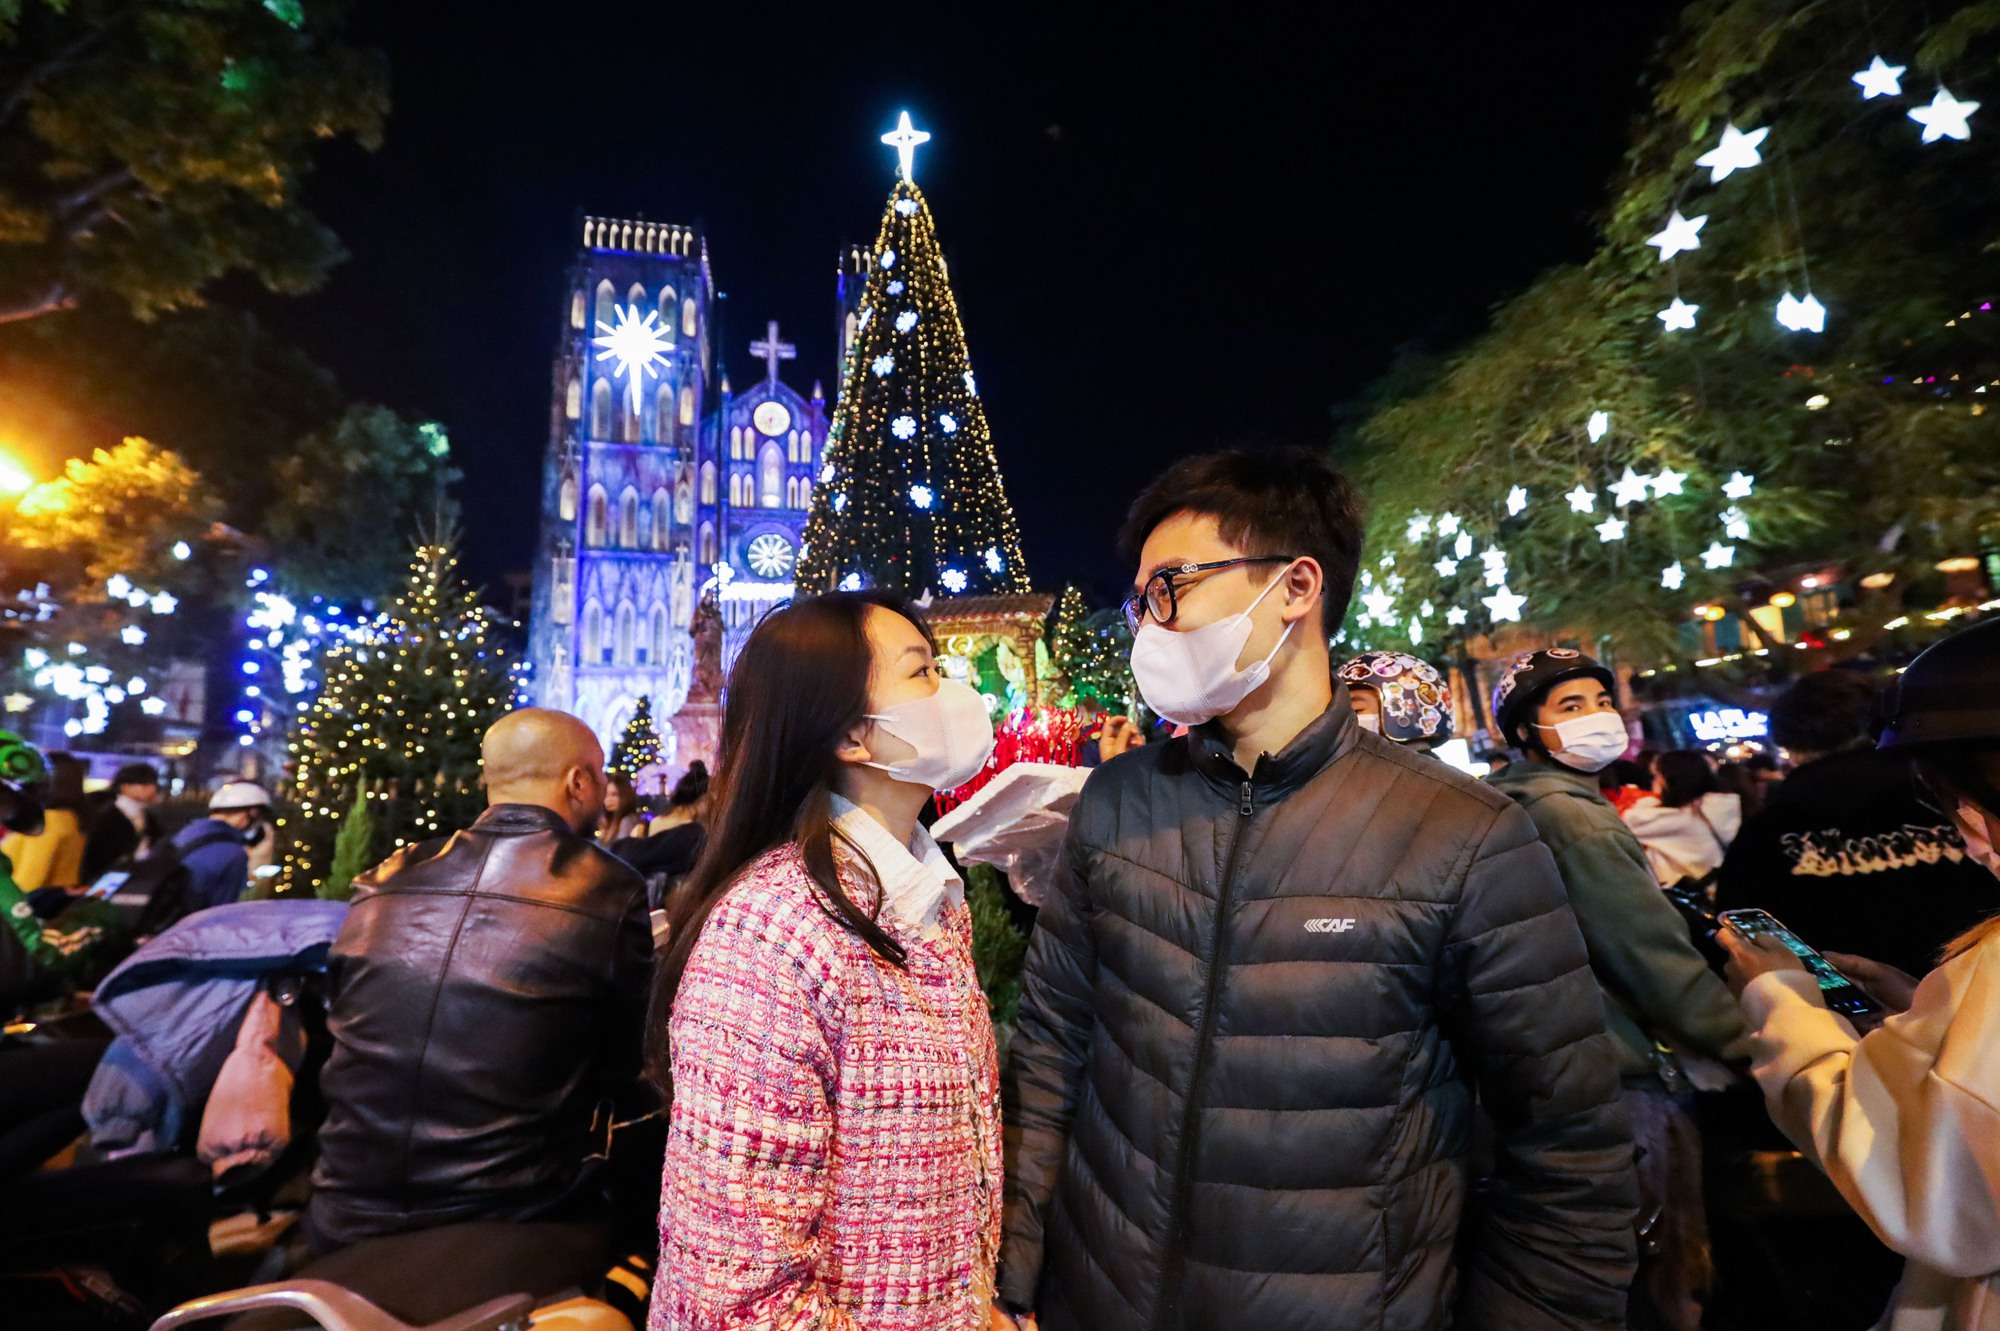 Chào đón mùa Giáng sinh, Nhà thờ Lớn Hà Nội được trang hoàng lung linh với những đèn lấp lánh, tạo nên không khí đầy phấn khích và mong chờ cho những du khách ghé thăm. Hãy đến và tận hưởng không gian cực kỳ ấm áp và đầy cảm xúc trong lễ hội Giáng sinh tại địa điểm này.